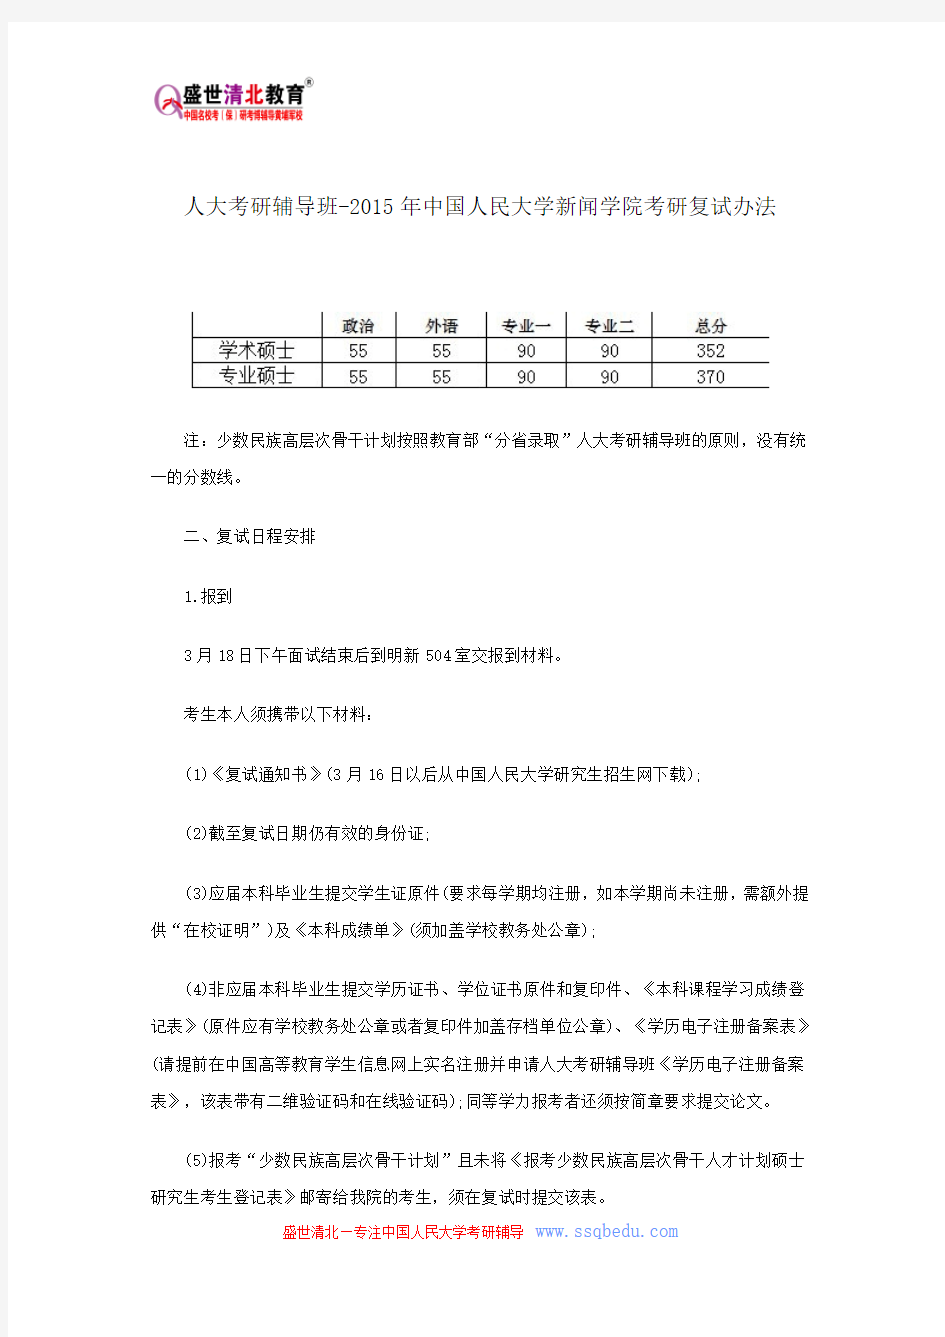 人大考研辅导班-2015年中国人民大学新闻学院考研复试办法